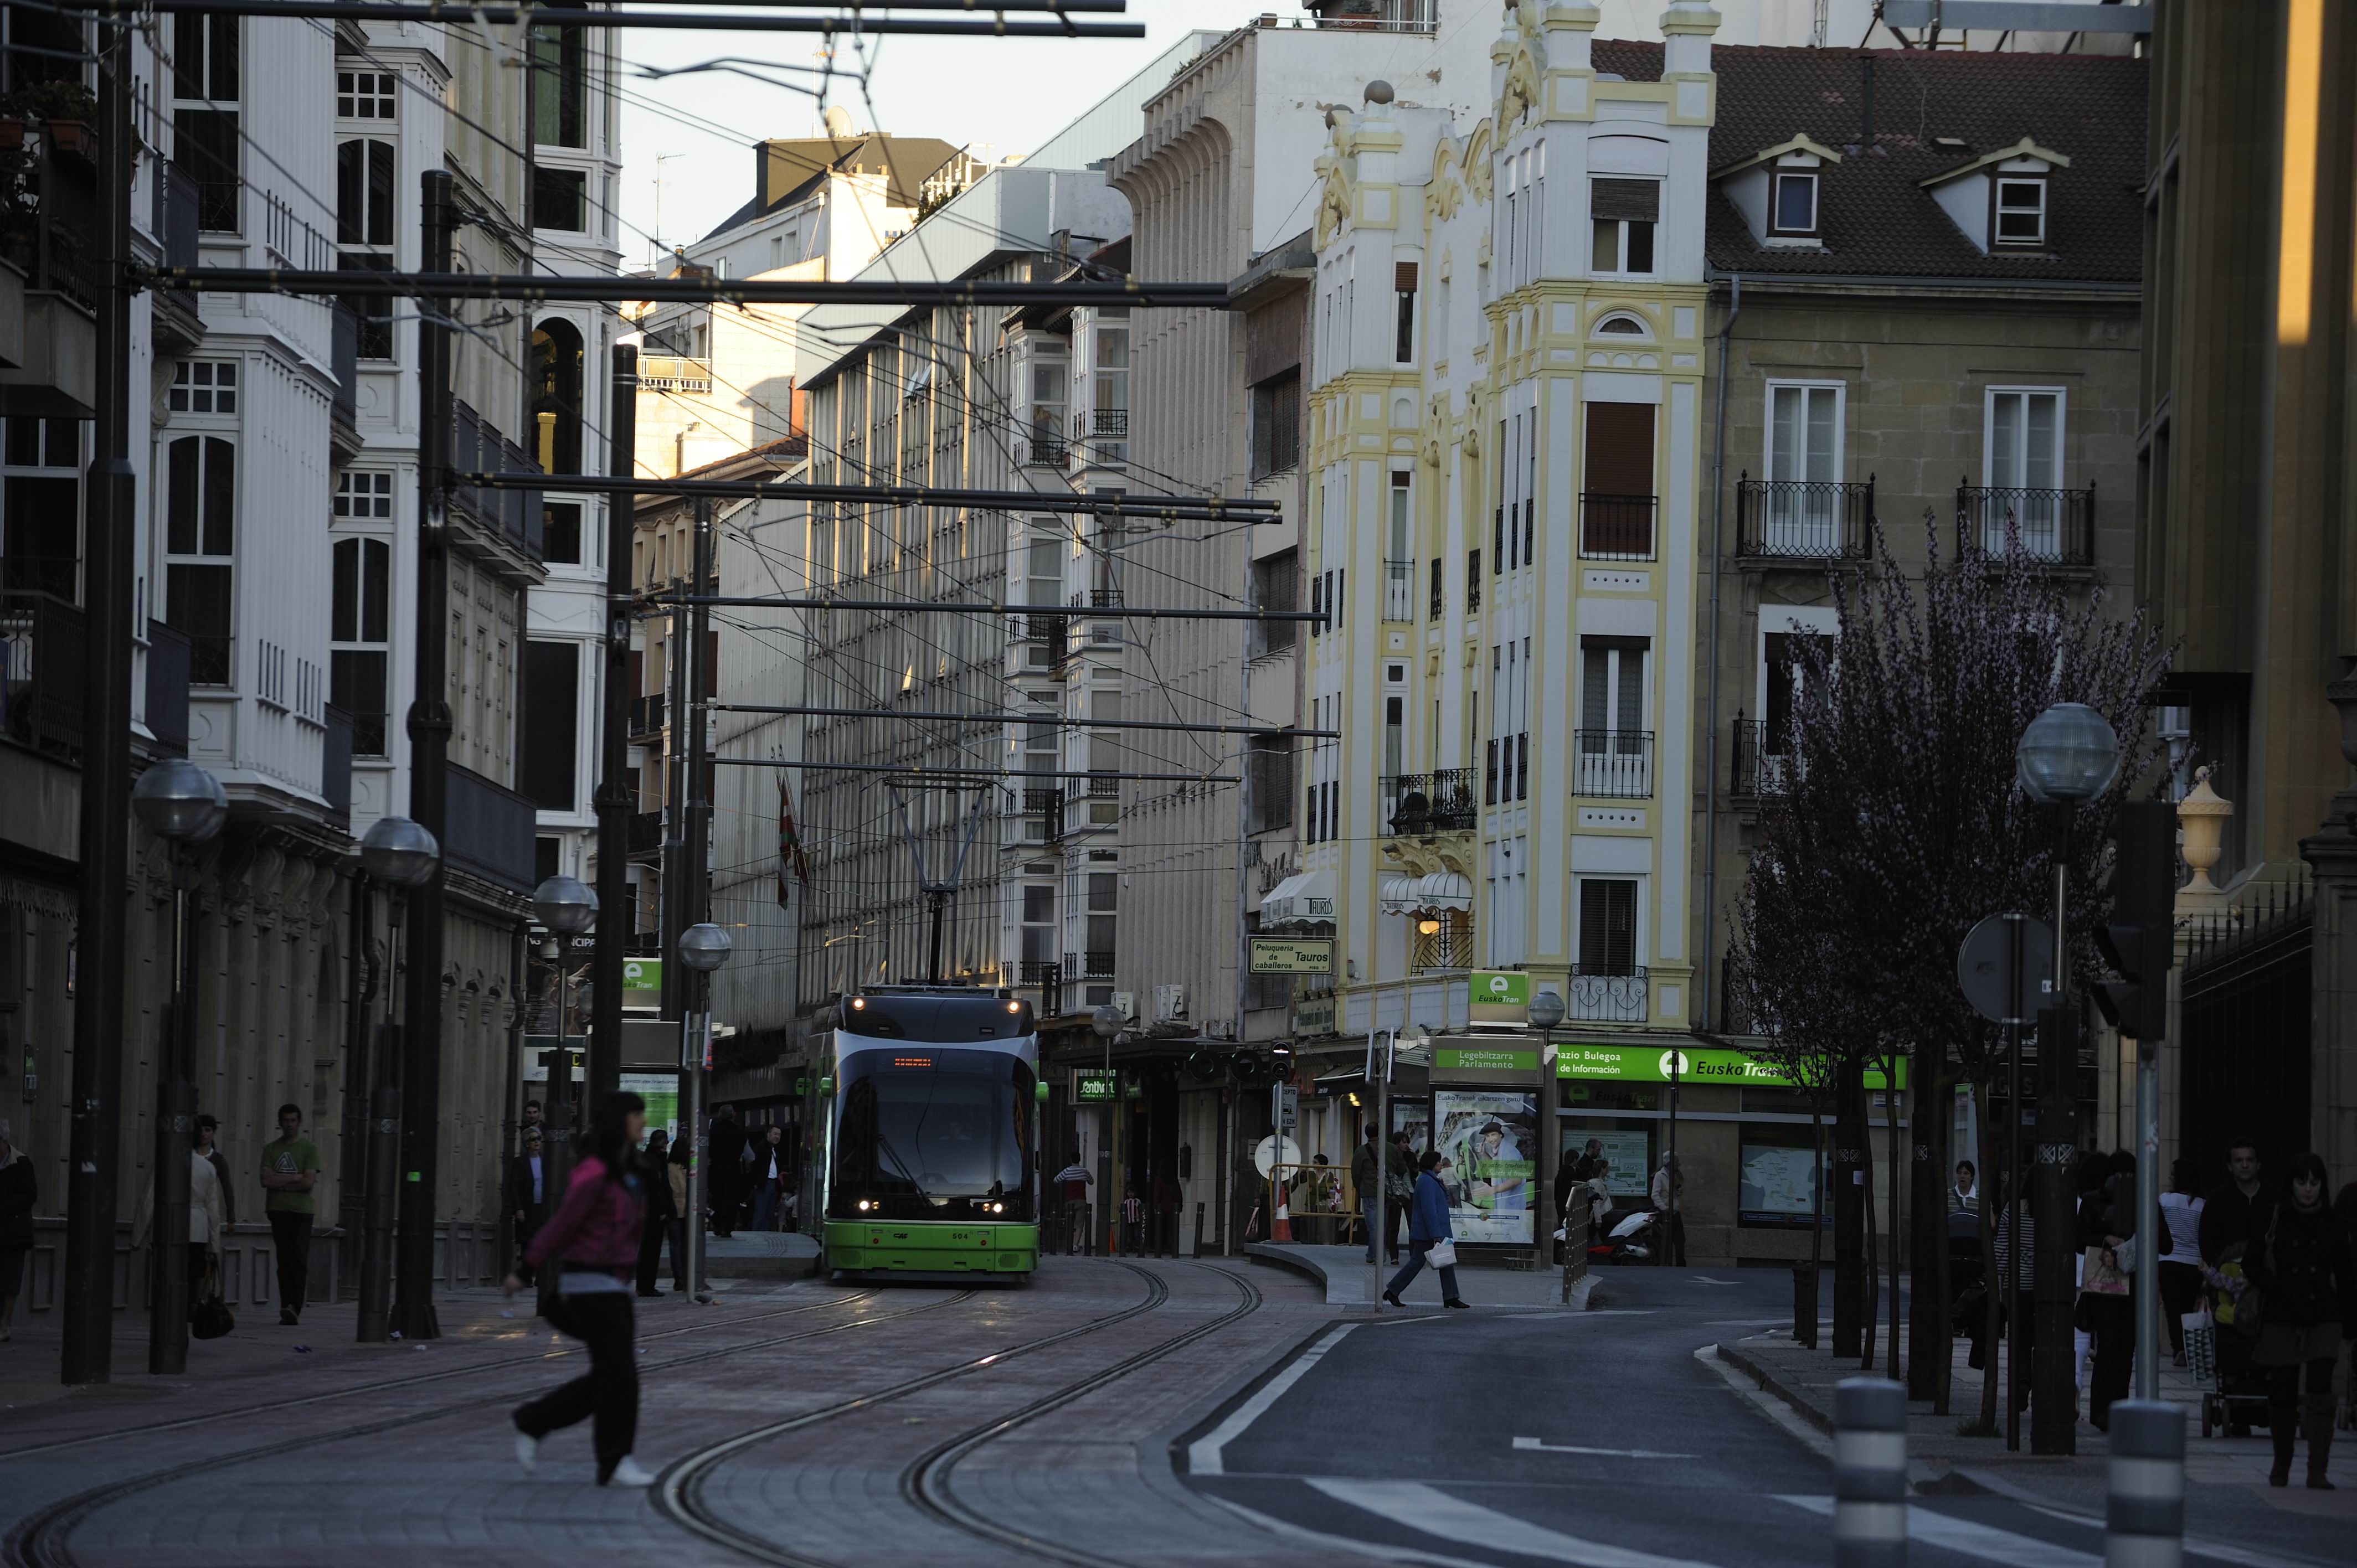 Moverse en tranvía puede ser una buena opción. CC BY-3.0-ES 2012/EJ-GV/Irekia-Eusko Jaurlaritza/Mikel Arrazola